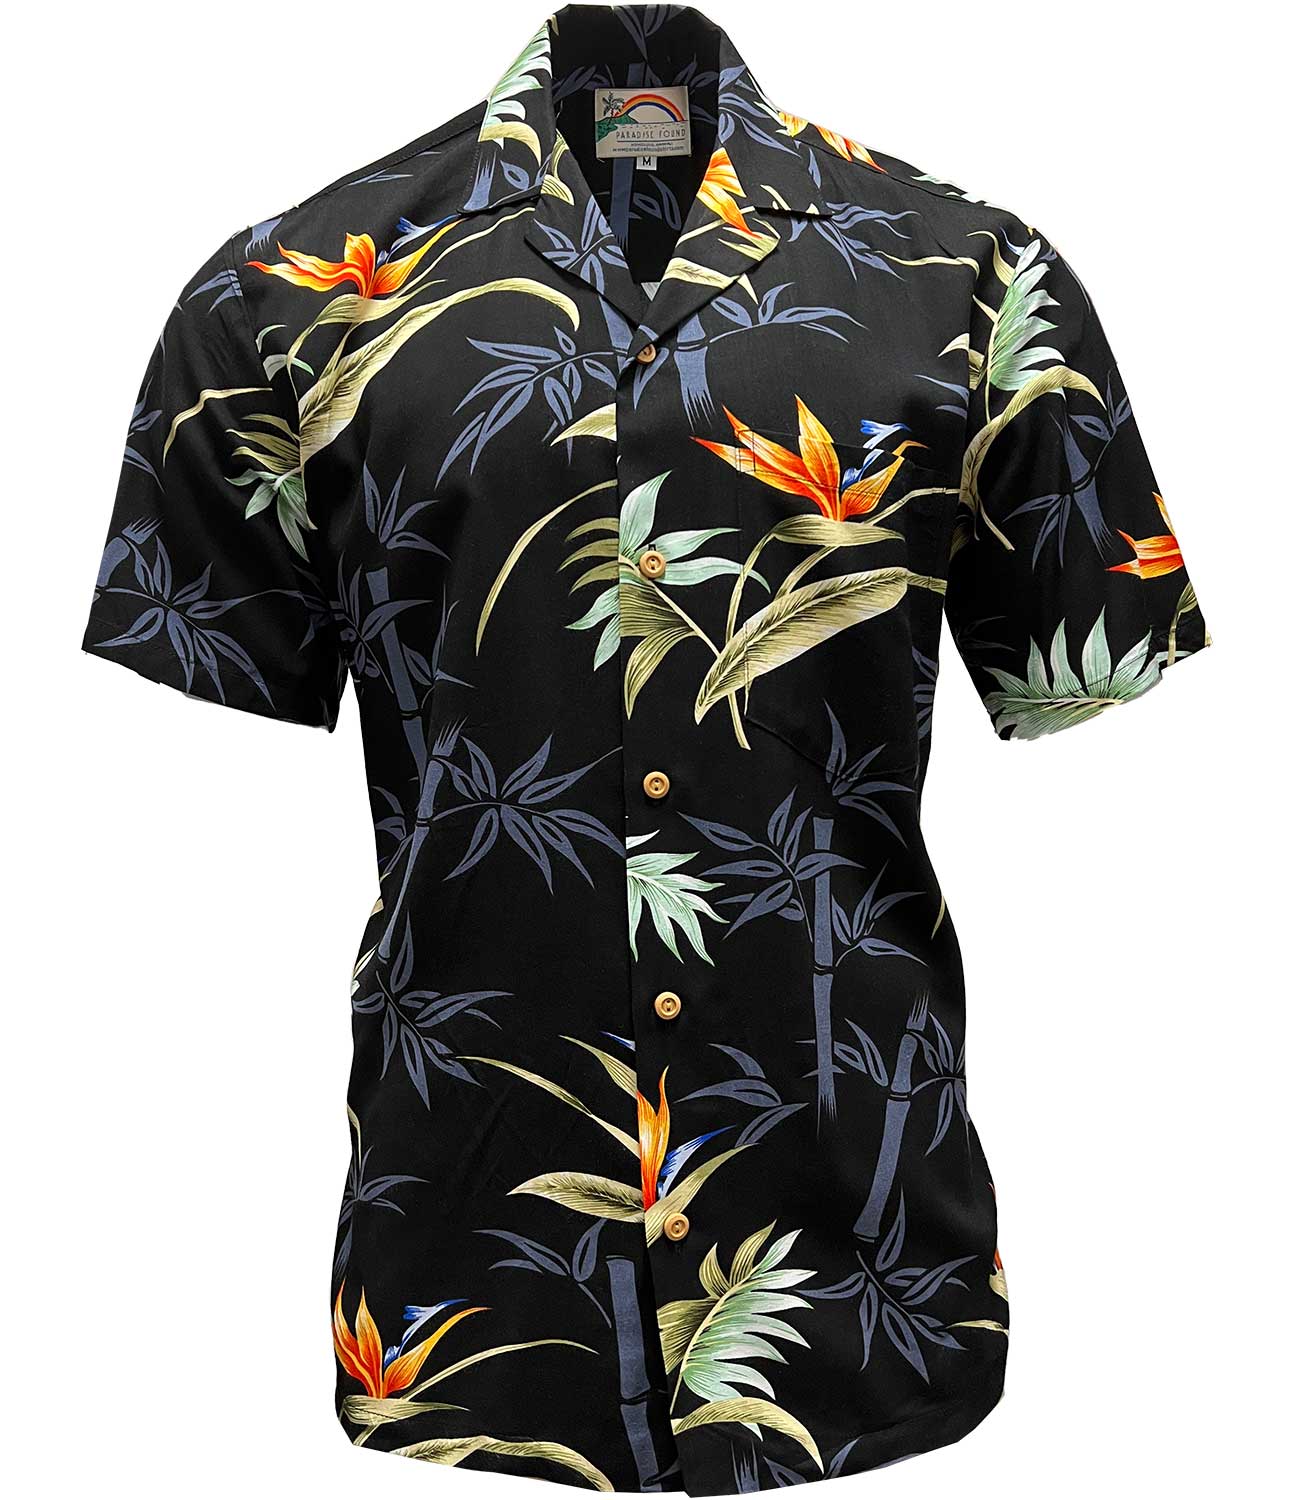 ASSID Bad World Hawaiian Shirt Black